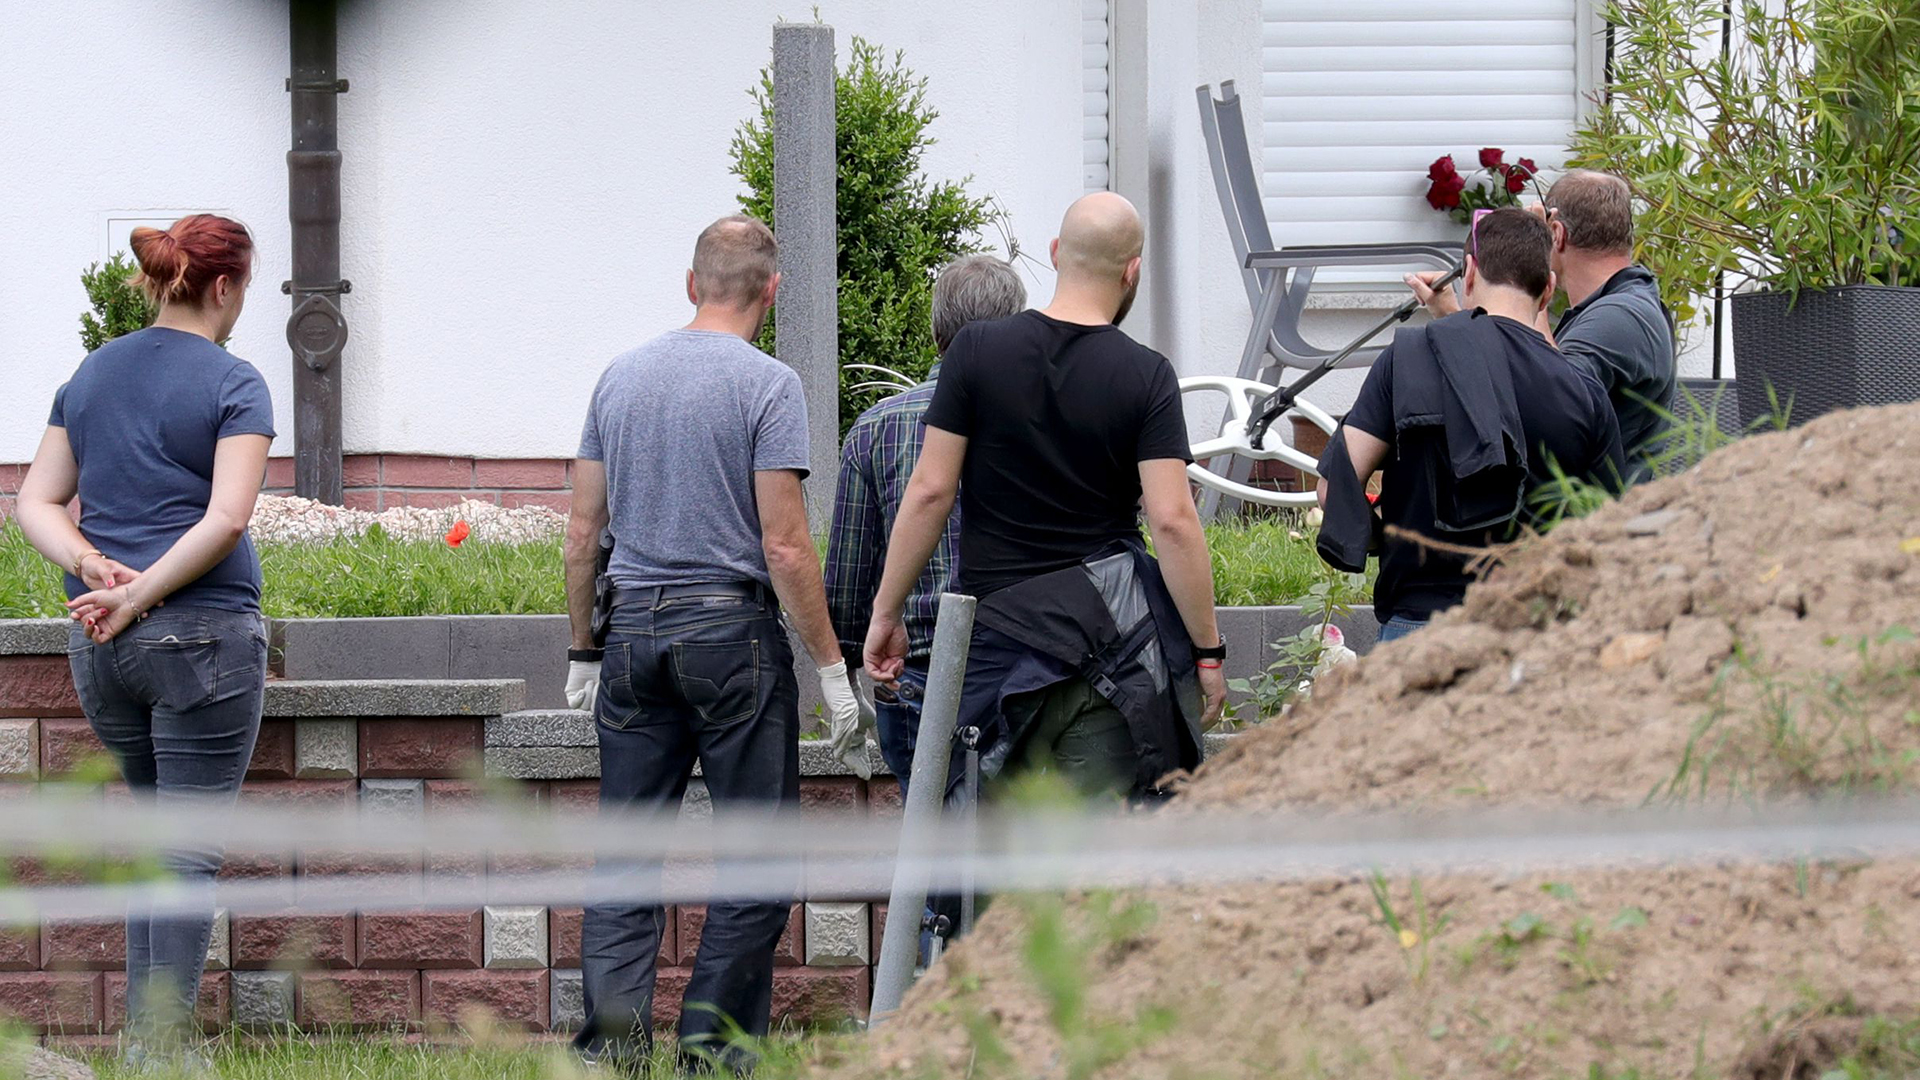 Polizisten untersuchen den Tatort in Wolfhagen-Istha | Bildquelle: ARMANDO BABANI/EPA-EFE/REX